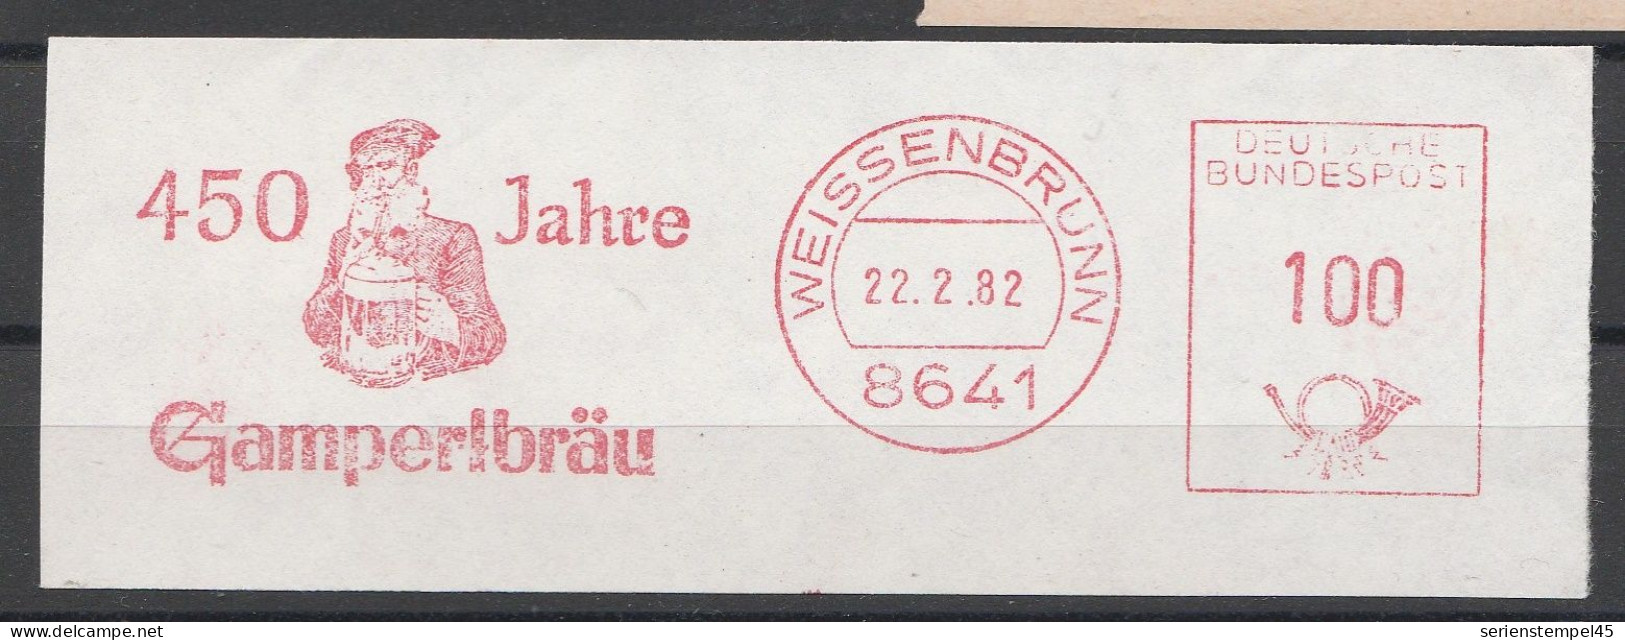 Motiv Getränke Bier Freistempel Briefstück Weissenbrunn 1982 450 Jahre Gamperlbräu - Birre